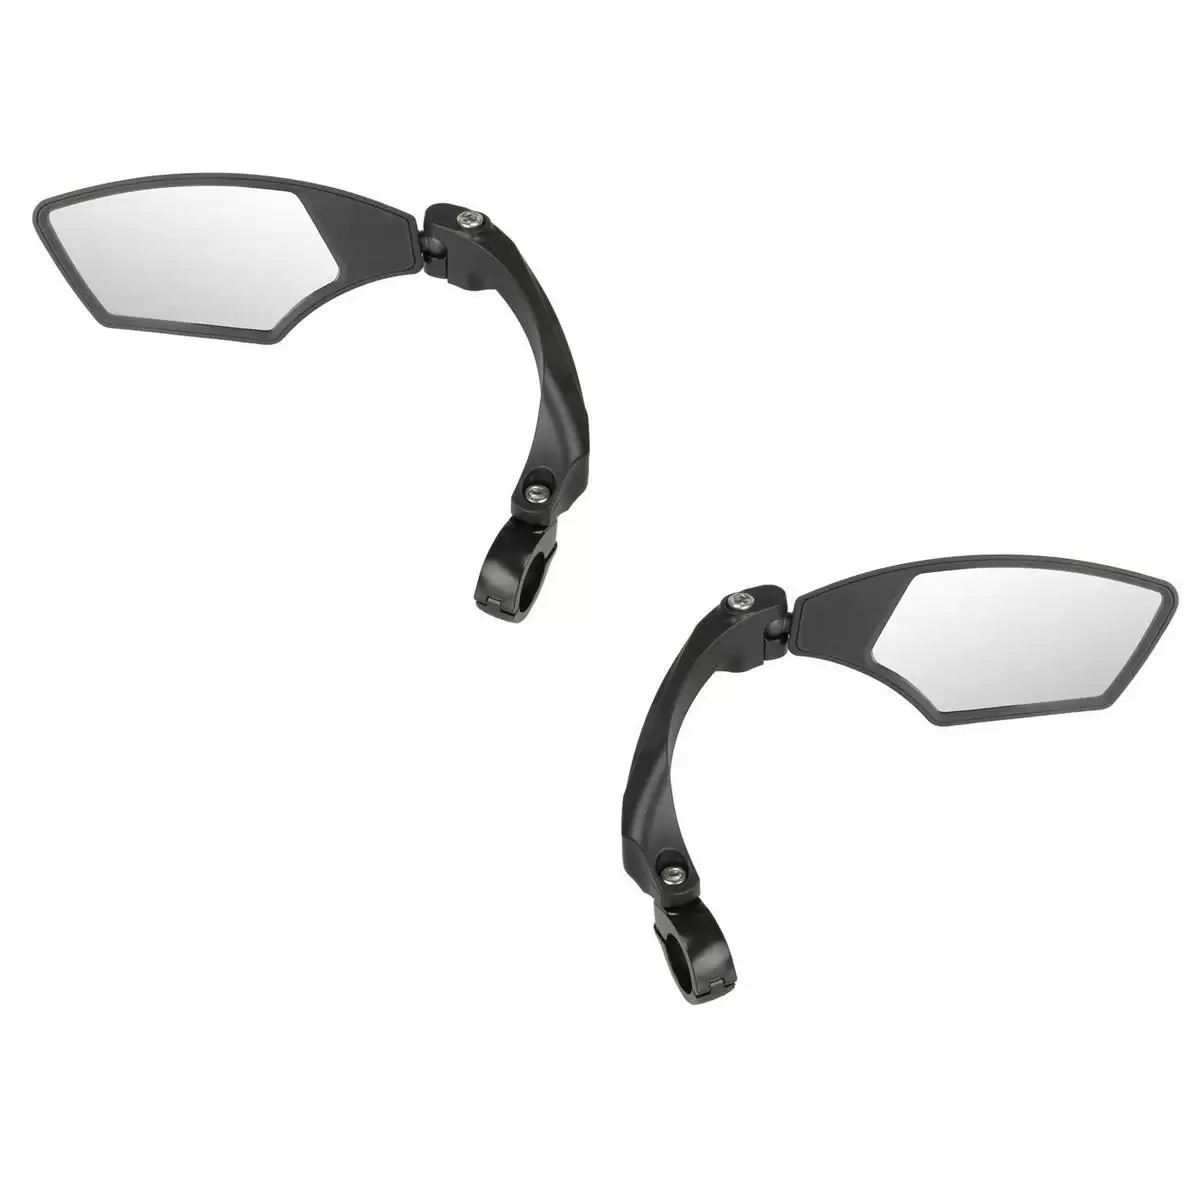 Kit specchietti Spy Space sinistro / destro per biciclette - image